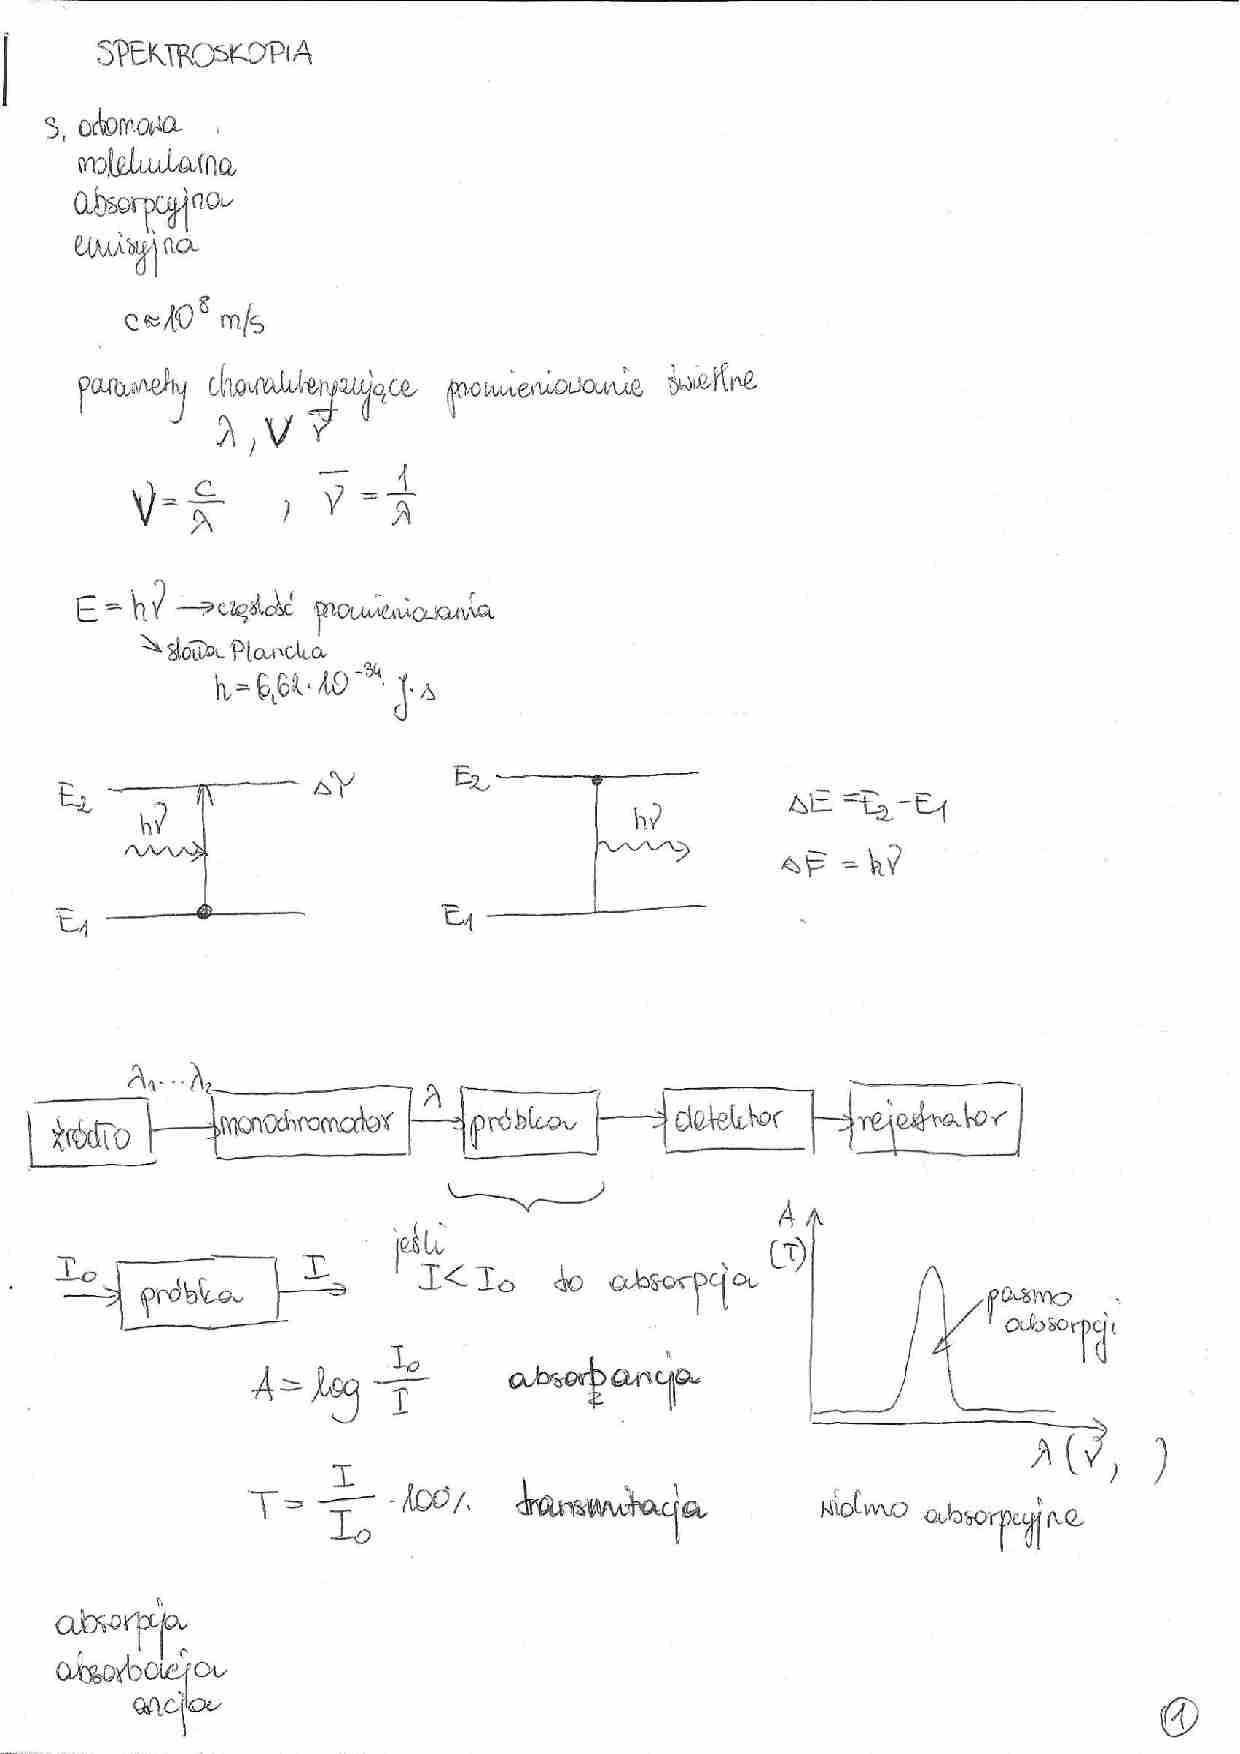 Wyklad - termodynamika techniczna i chemiczna - strona 1